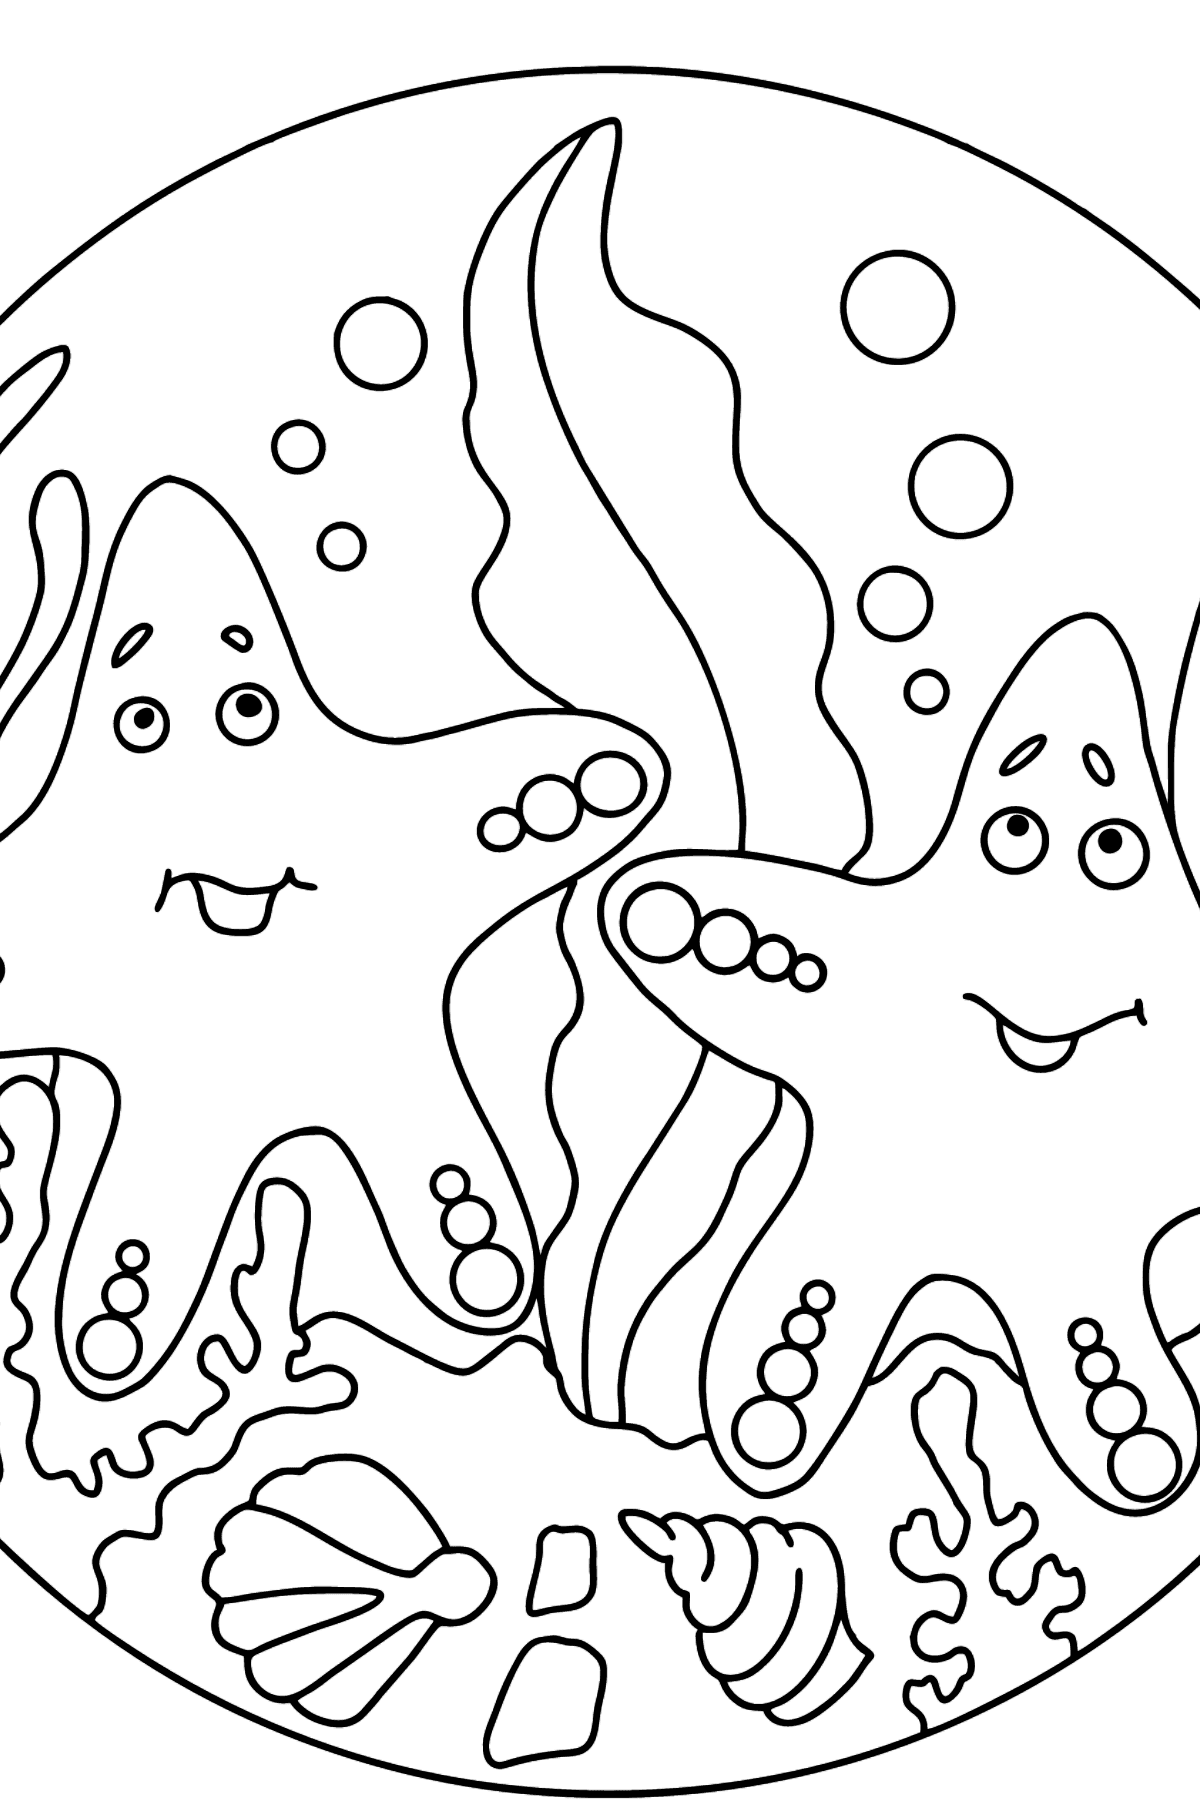 Boyama sayfası iki deniz yıldızı (karmaşık) - Boyamalar çocuklar için